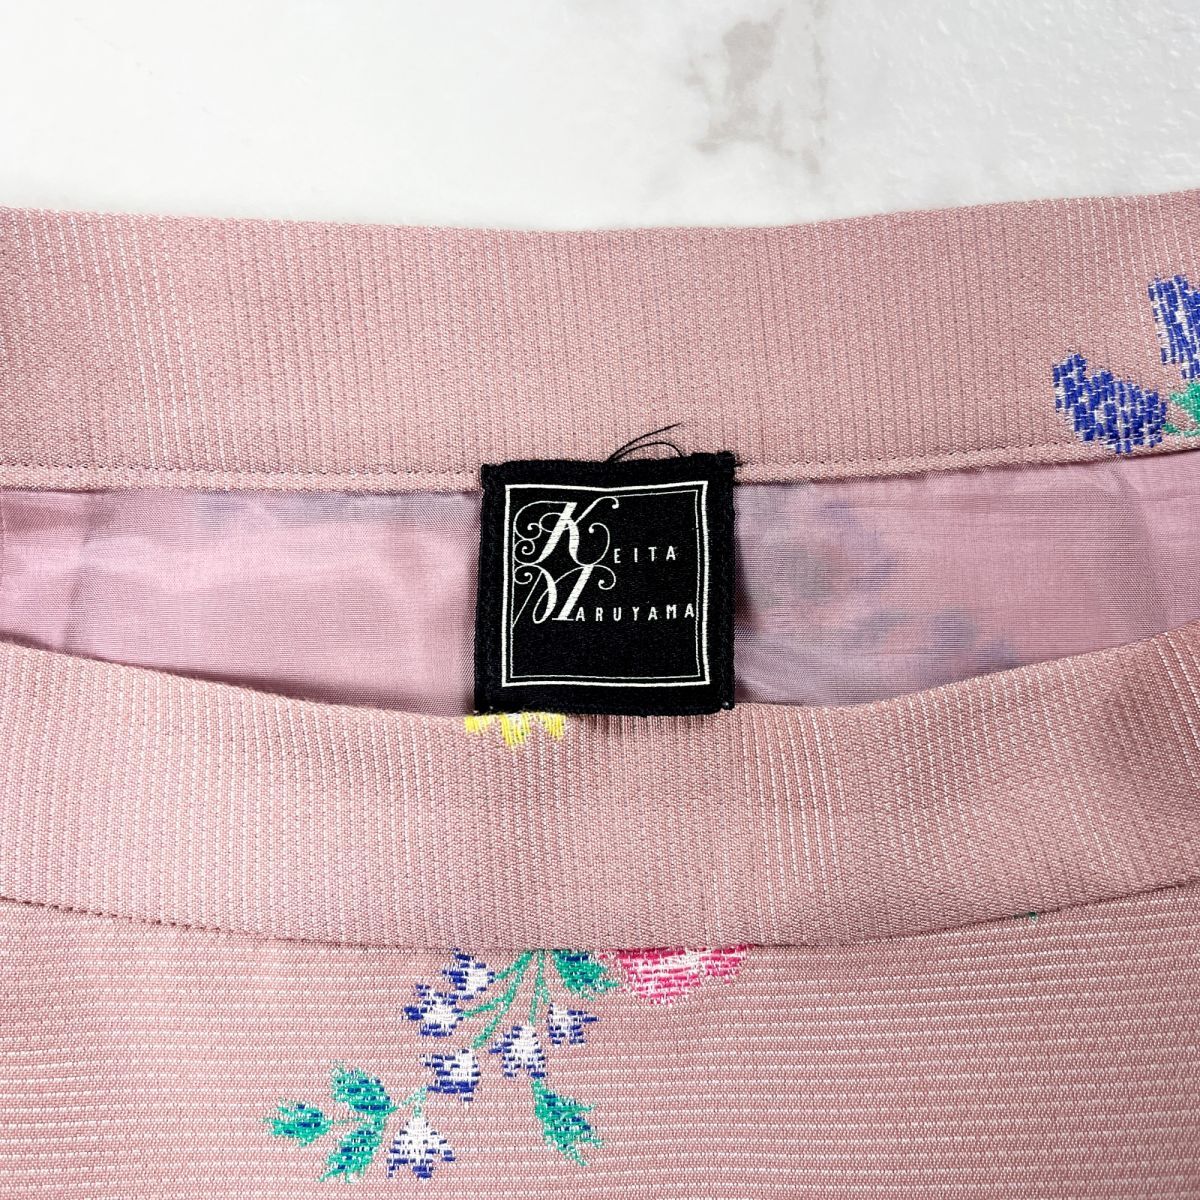 KEITAMARUYAMA Keita Maruyama цветочный принт юбка-трапеция боковой Zip колени длина подкладка есть розовый размер 2*MC1196